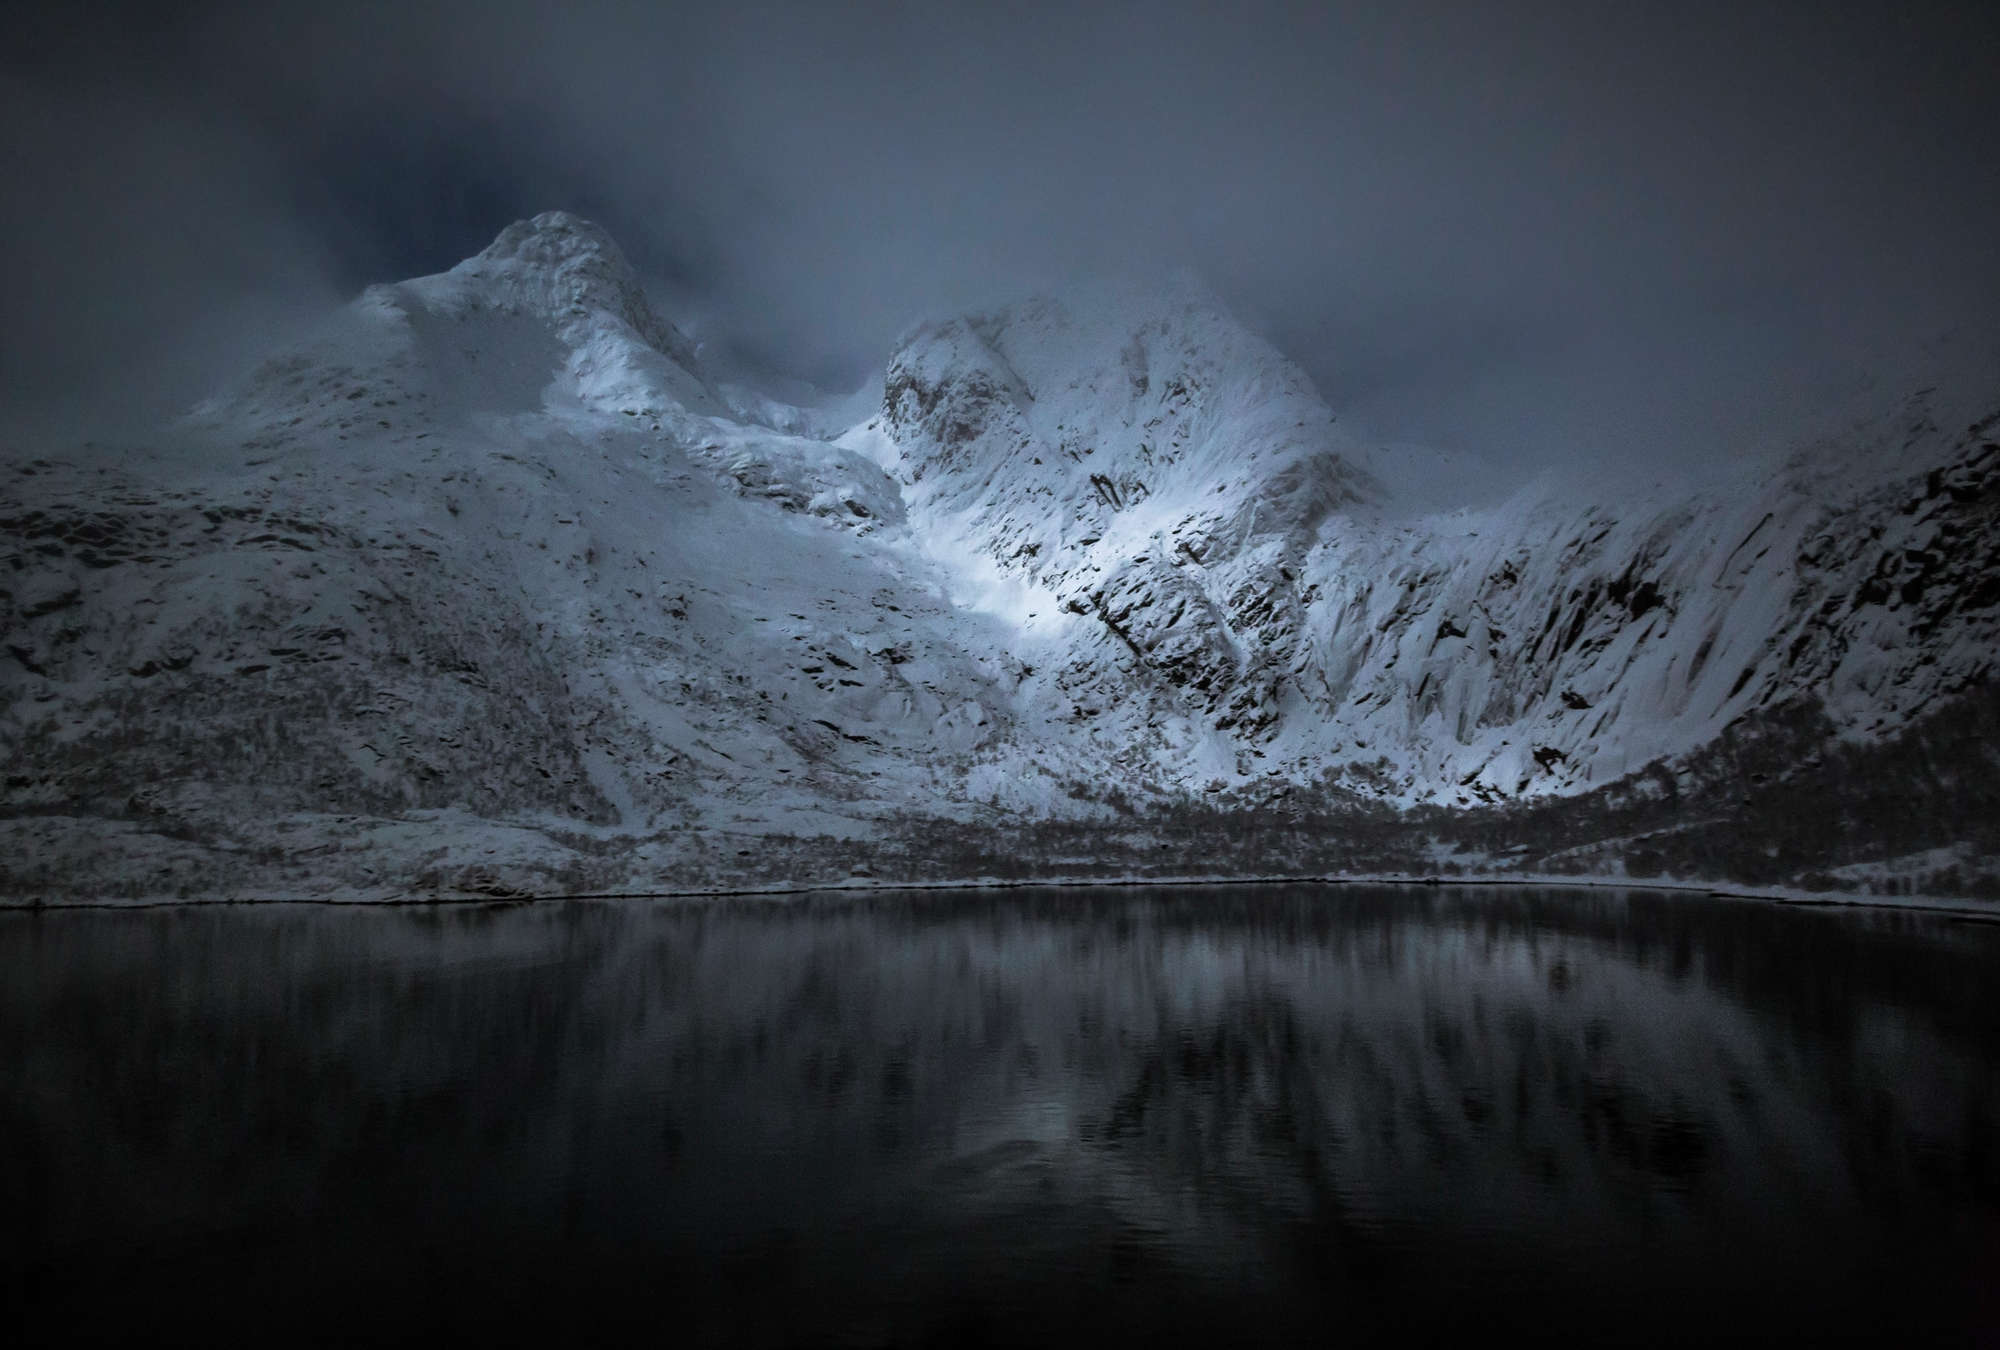             Mountains & Lake mural - Lofoten in Norway at night
        